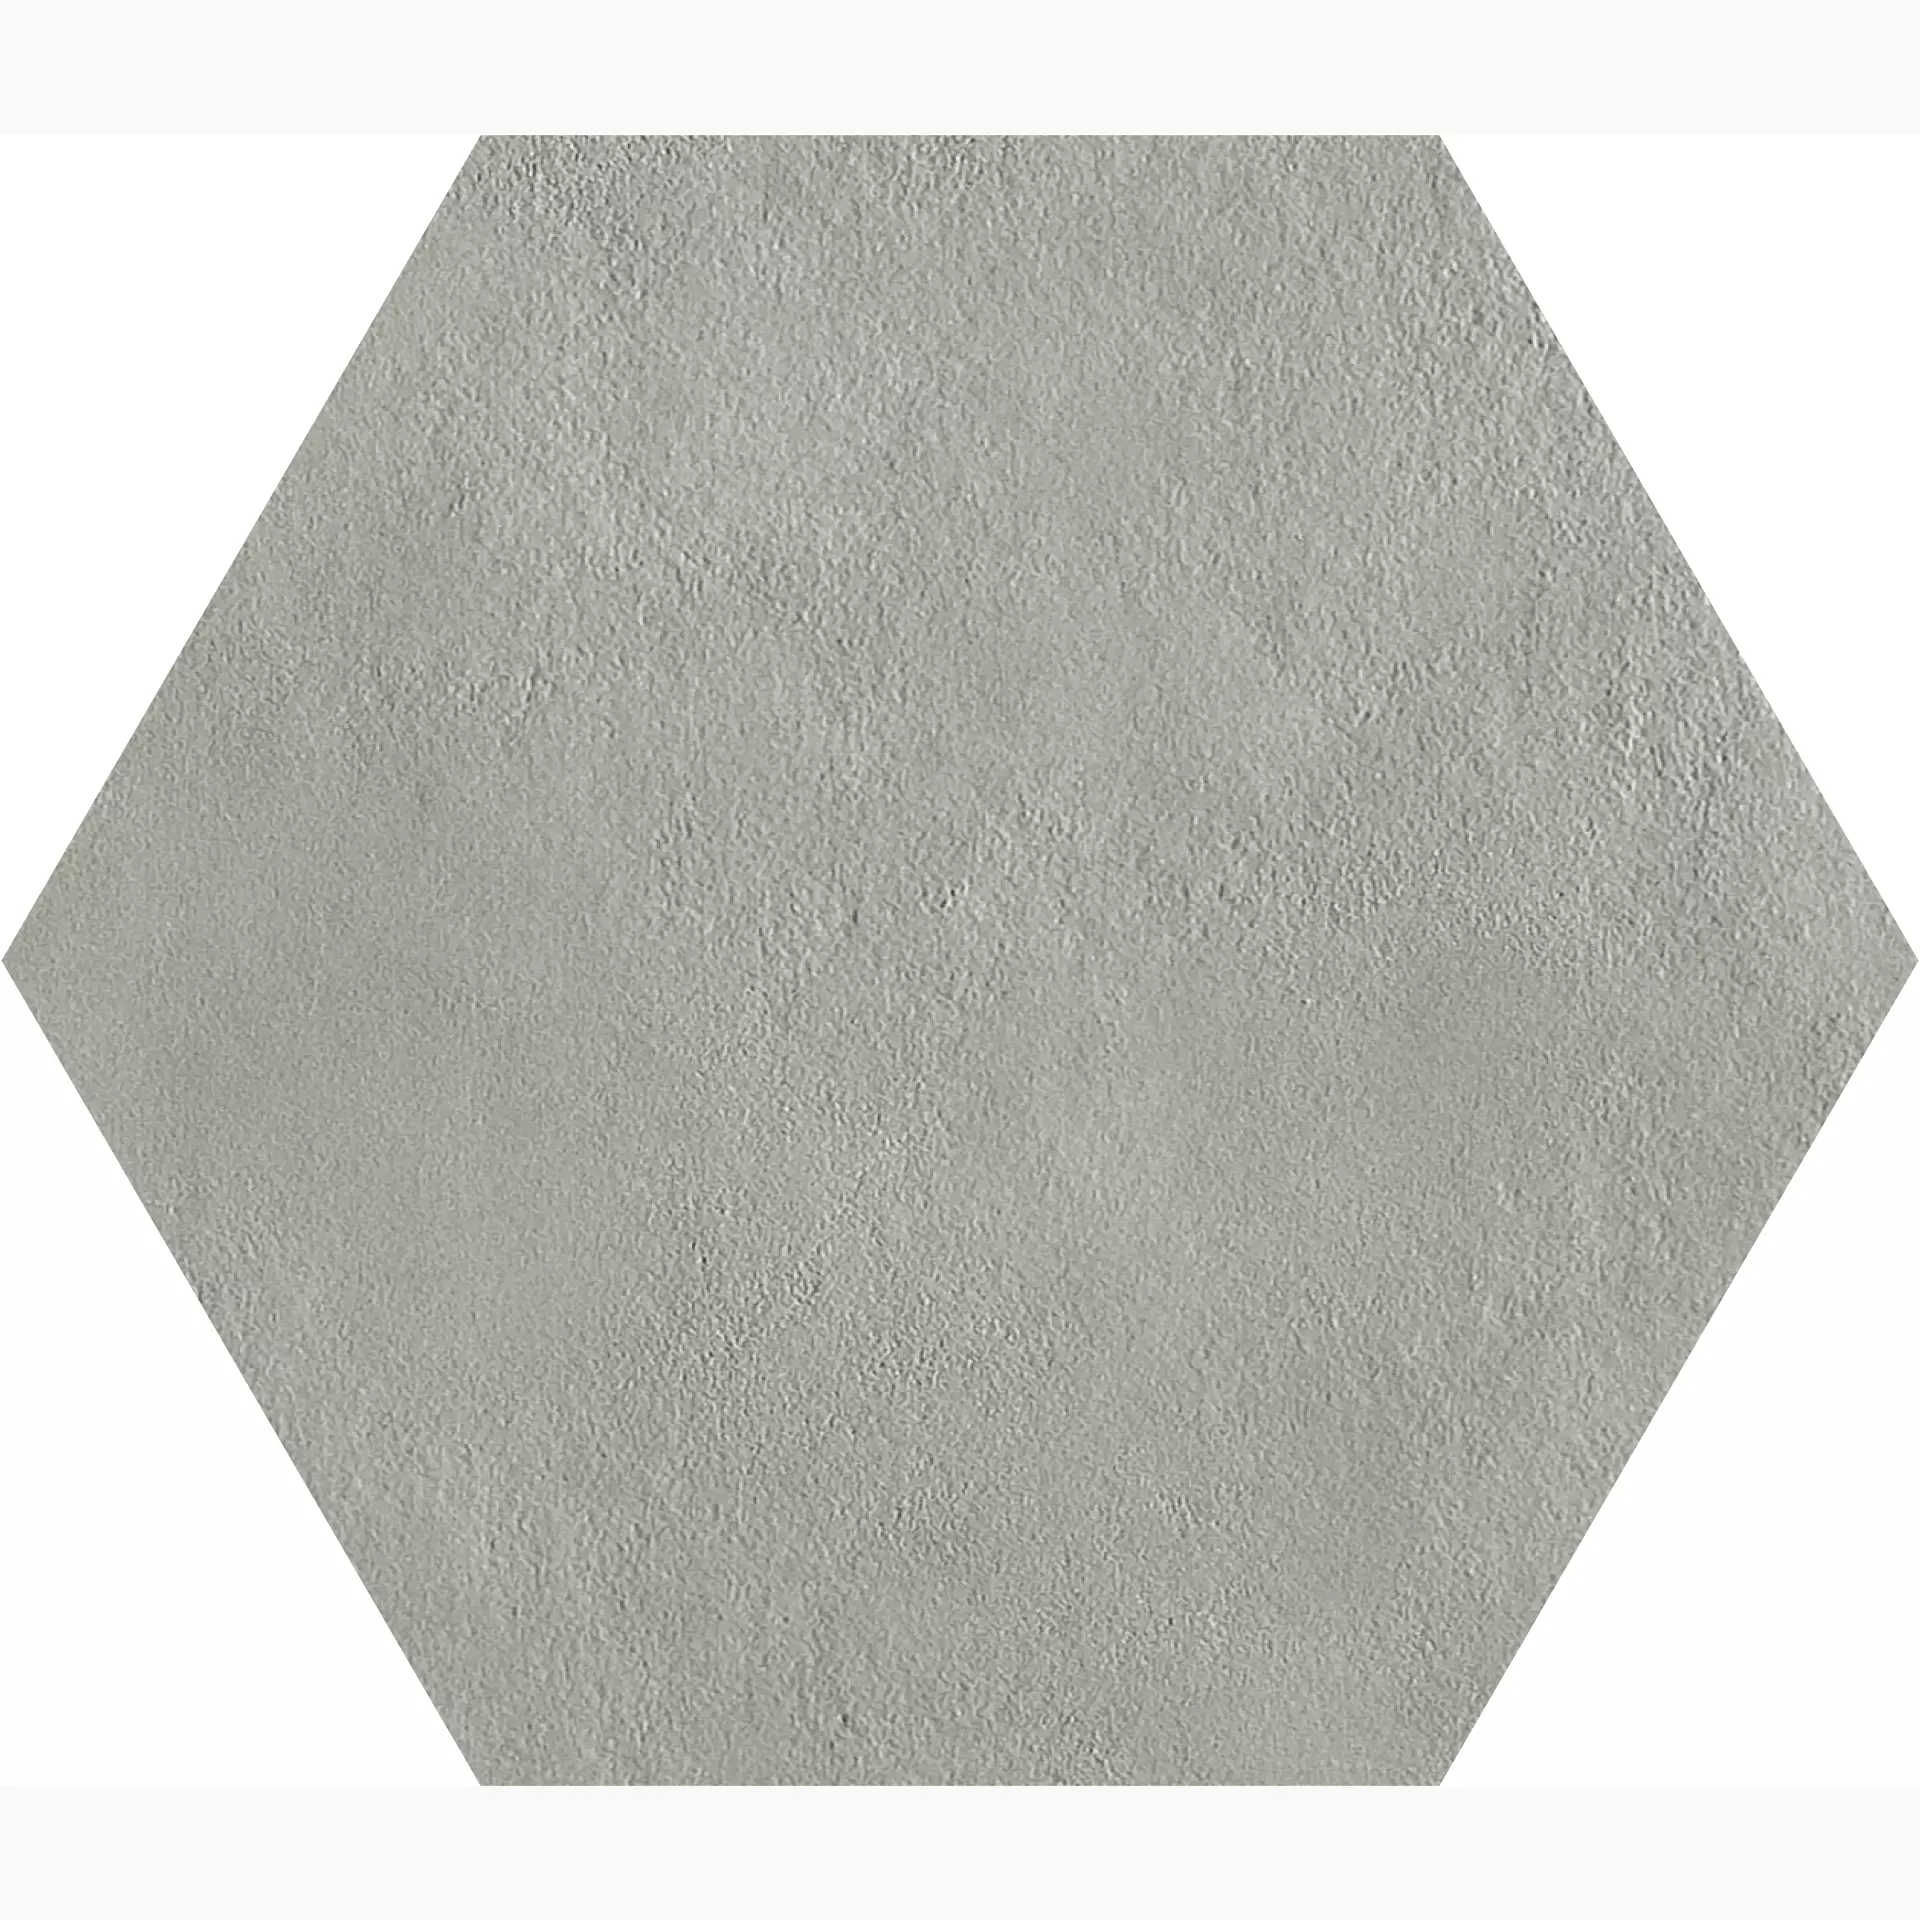 Gigacer Argilla Dry Material Dry PO1818ESADRY matt 31x36cm Dekor Large Hexagon 6mm